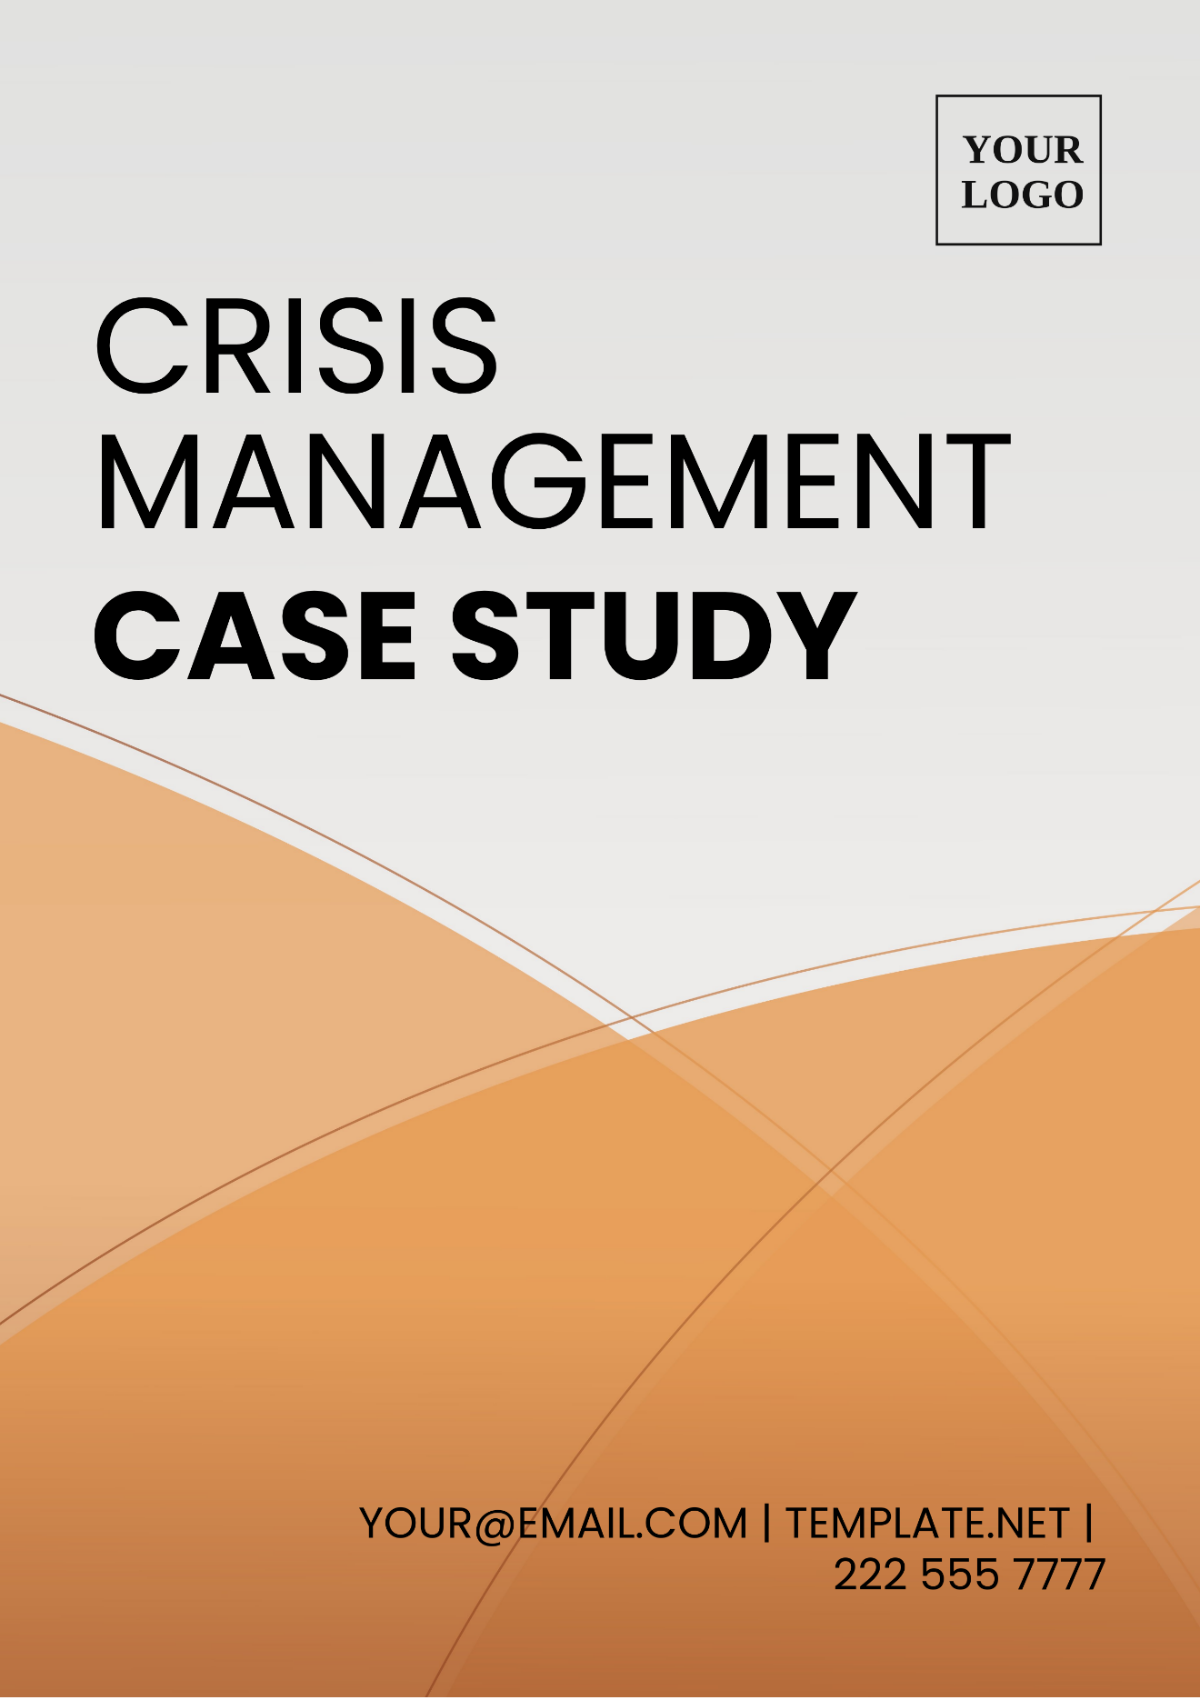 Crisis Management Case Study Template